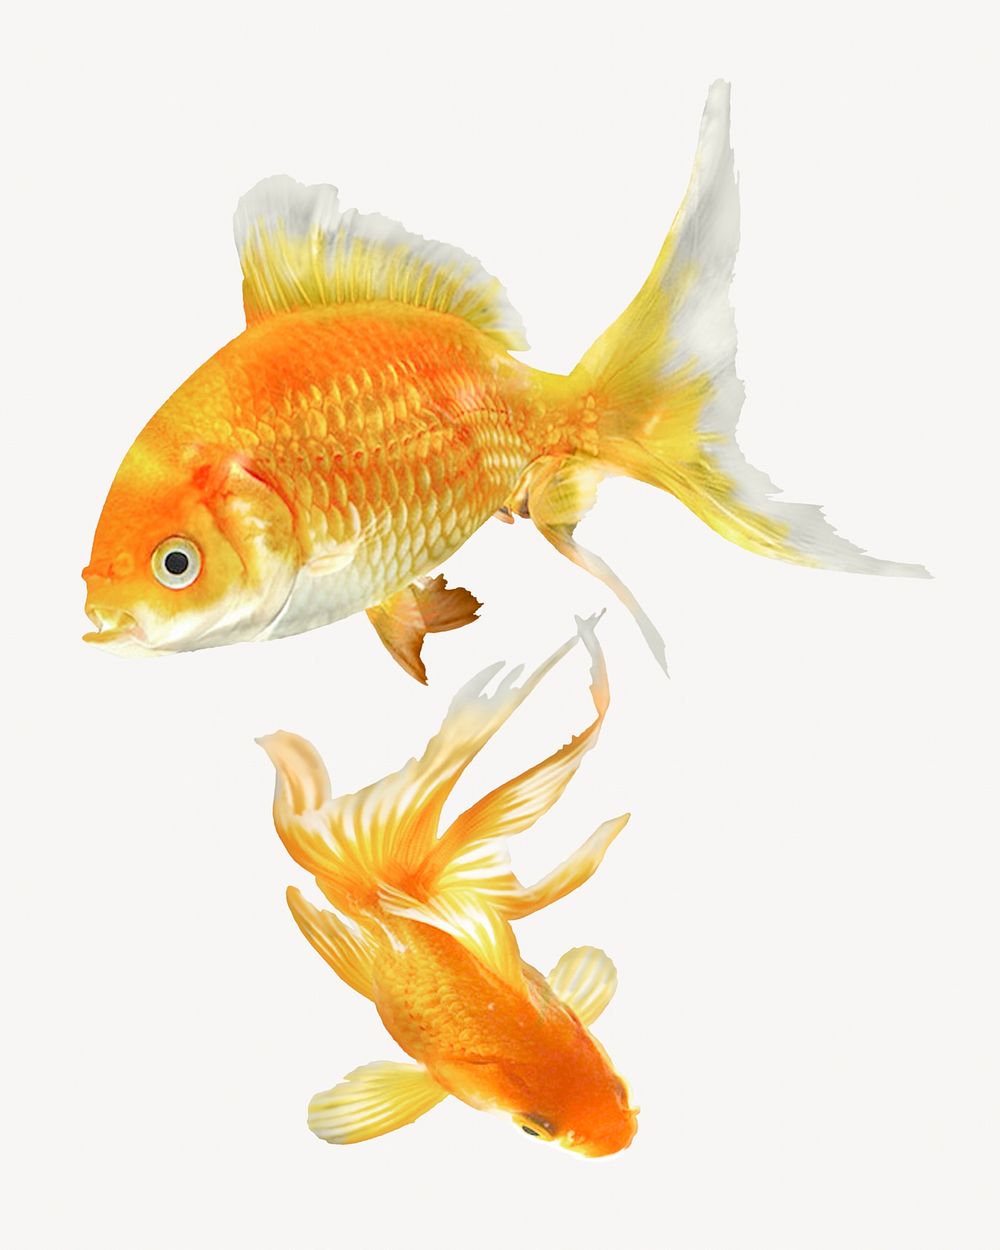 Goldfish, pet animal isolated image